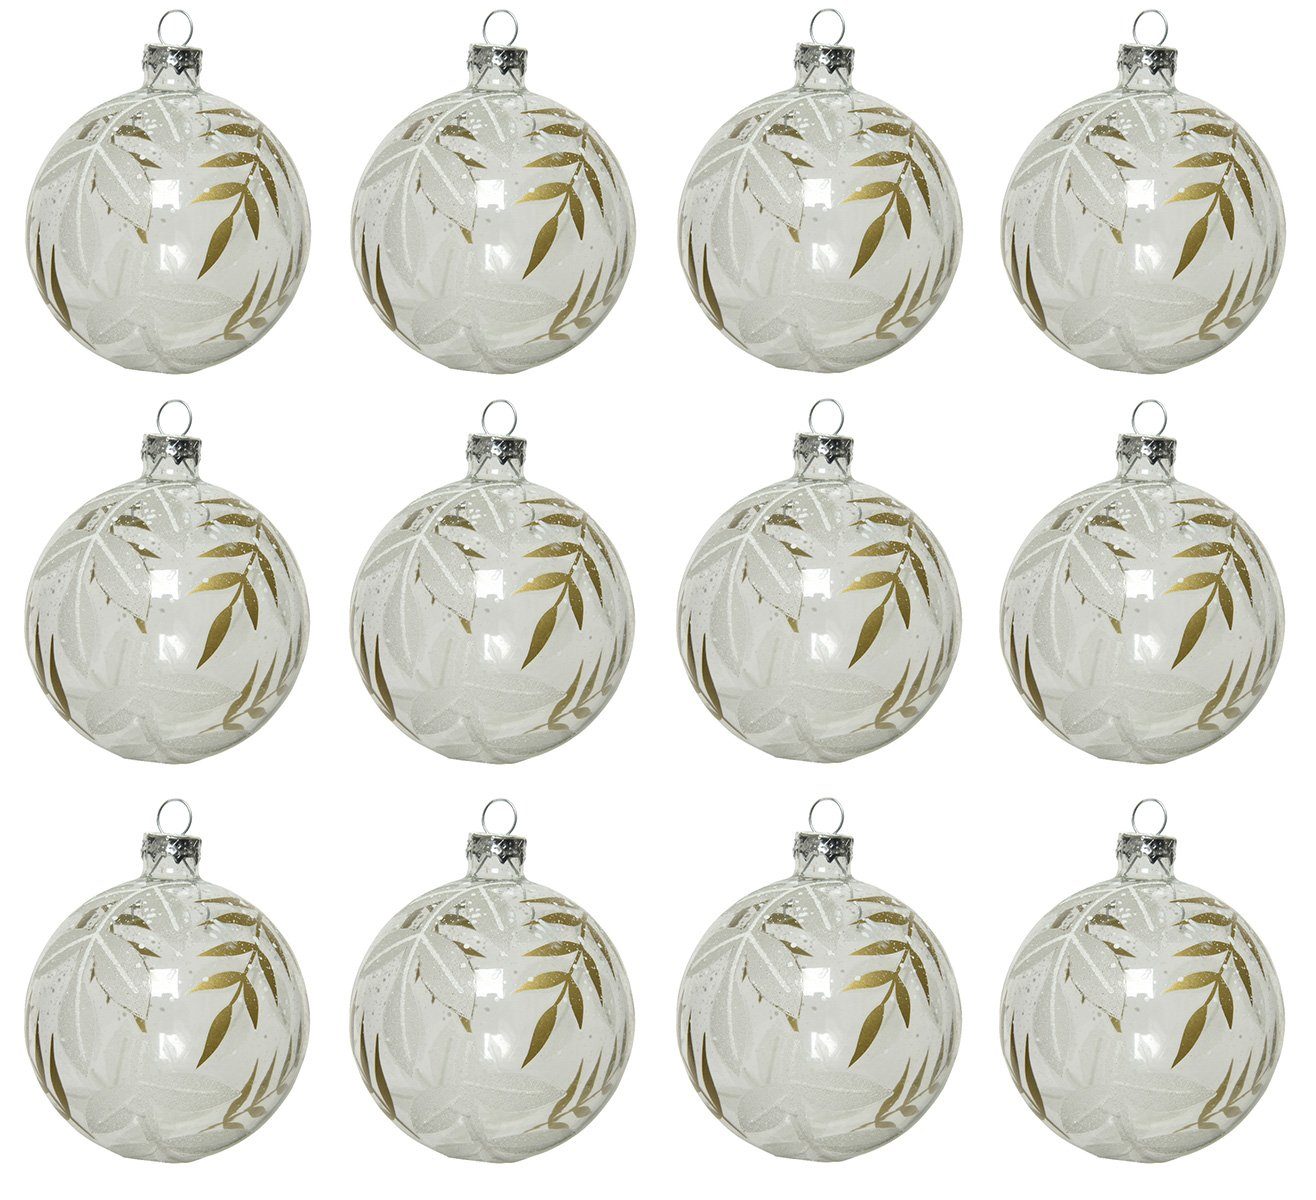 Decoris season decorations Weihnachtsbaumkugel, Weihnachtskugeln Glas 8cm mit Blätter Muster 12er Set Klar transparent